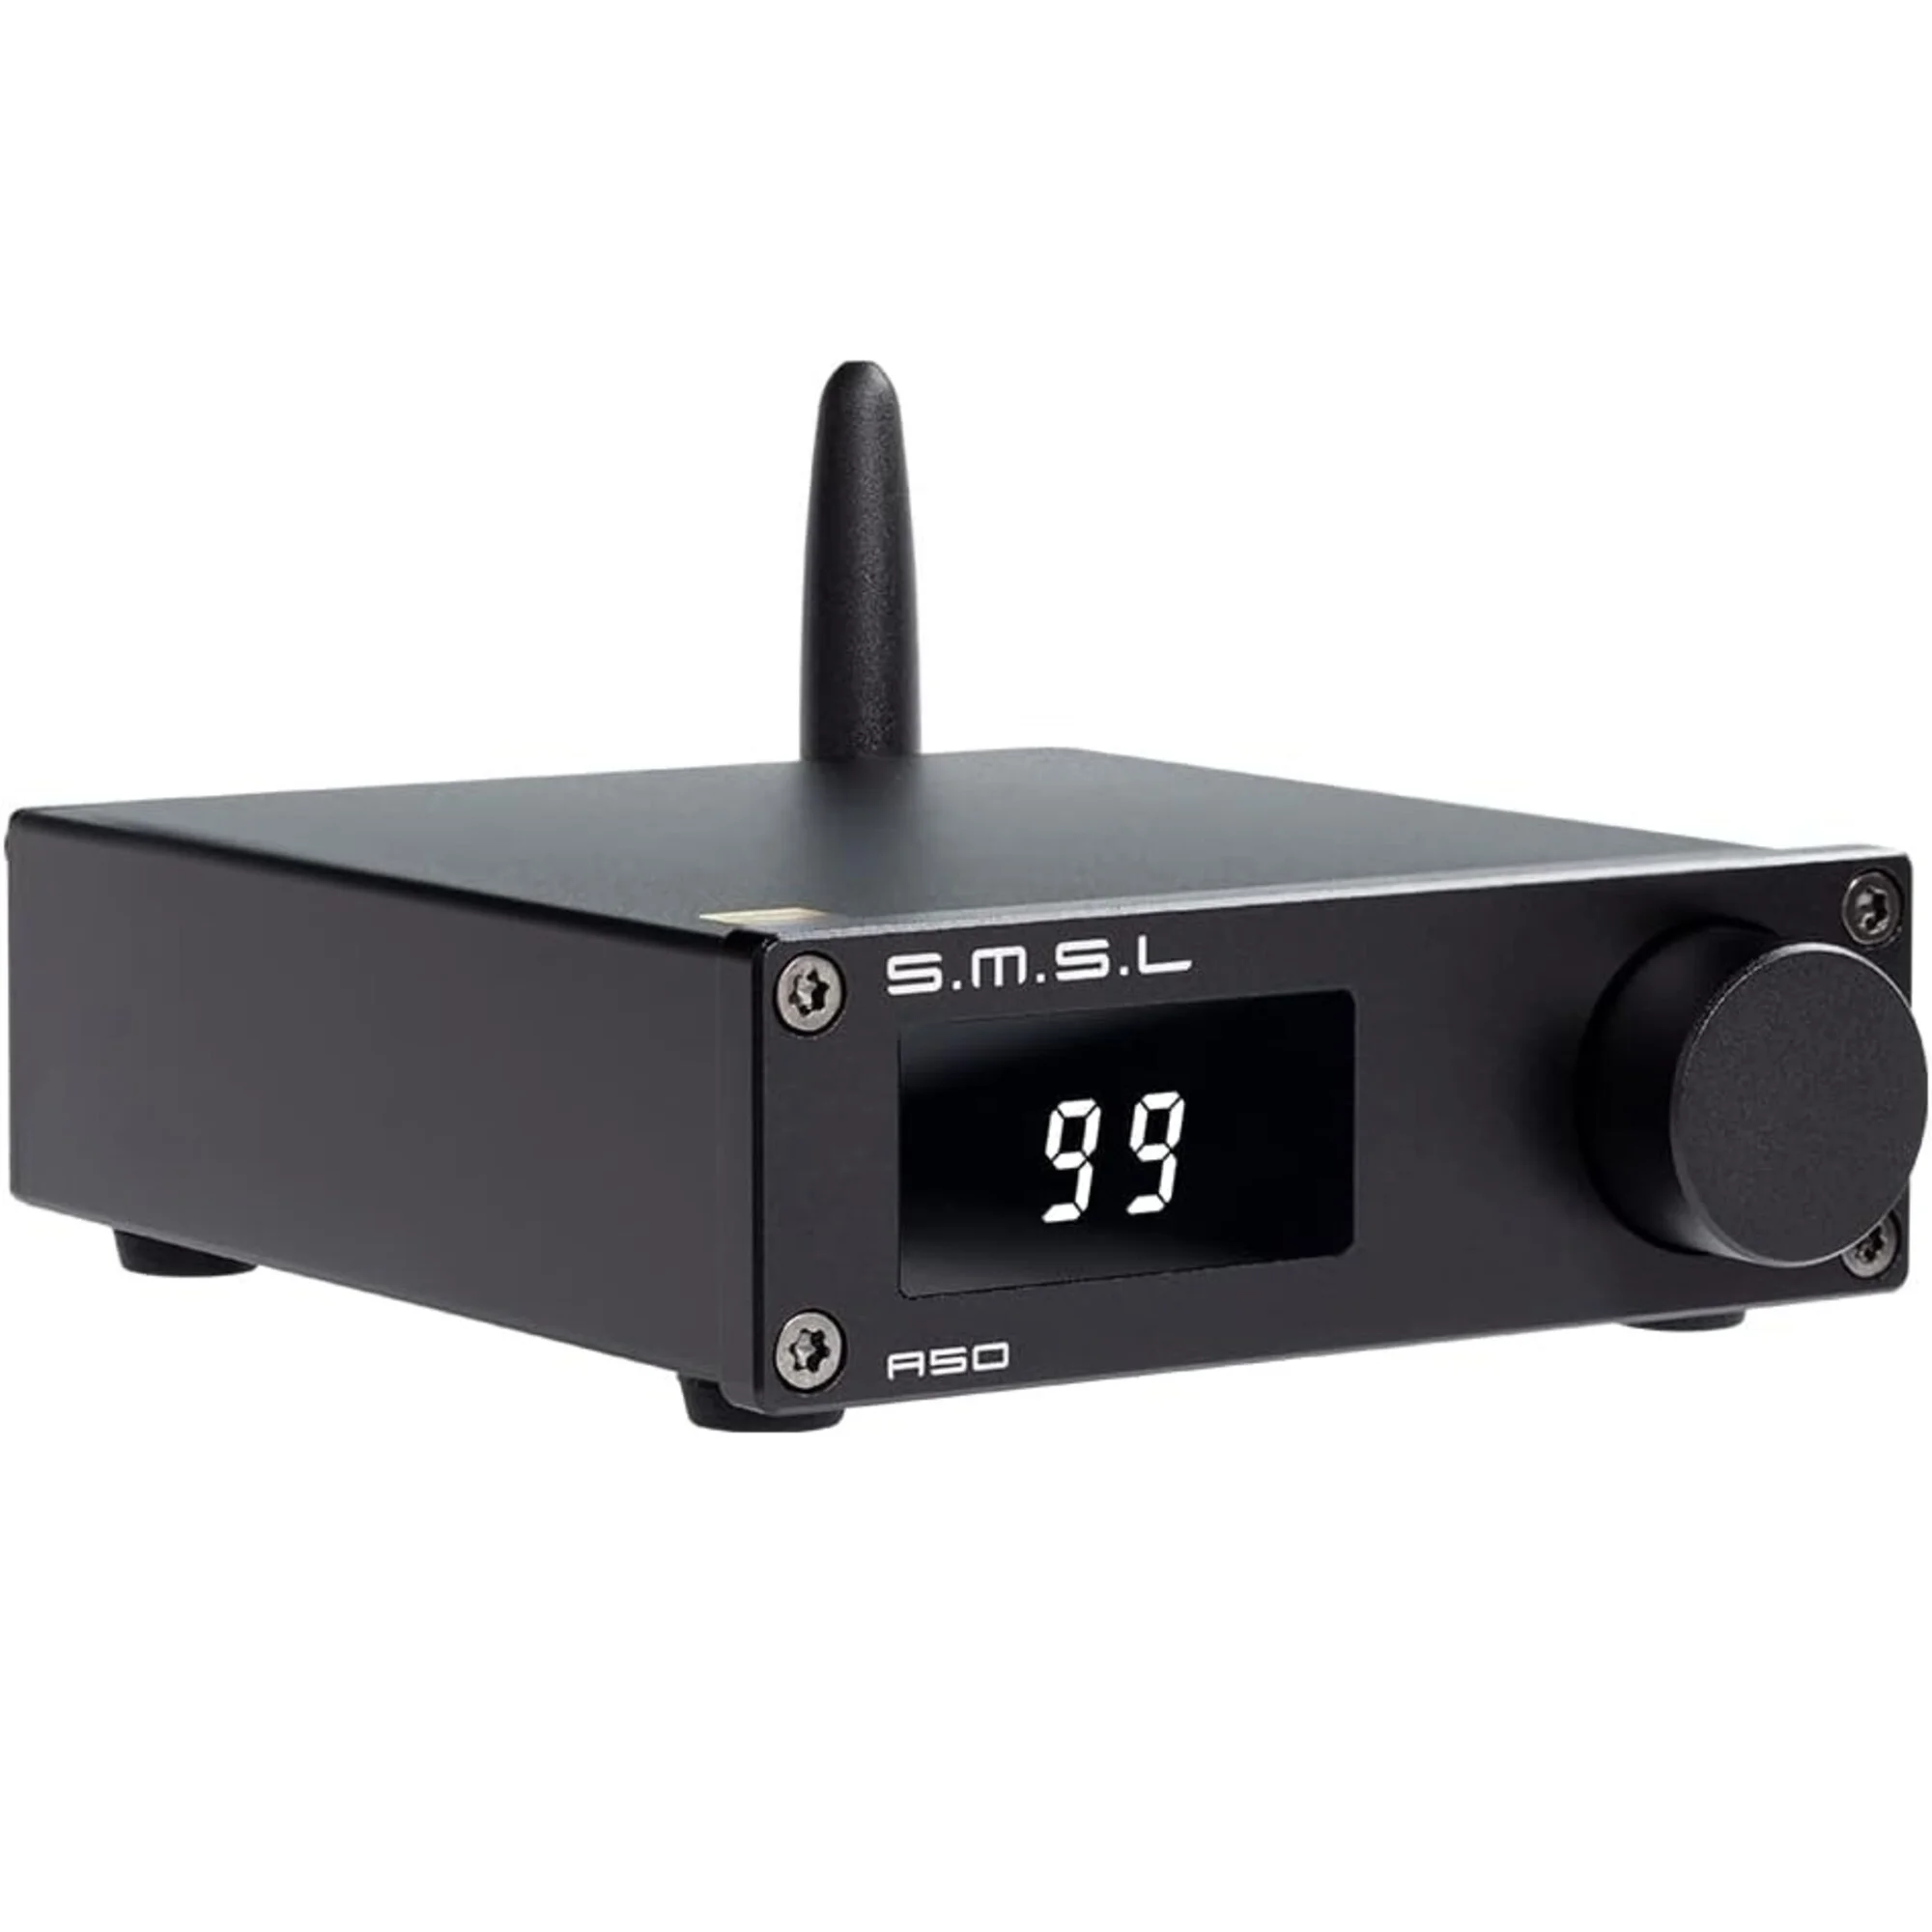 Amplificatoare de putere - Amplificator stereo mini SMSL A50 cu Bluetooth 5.0, audioclub.ro